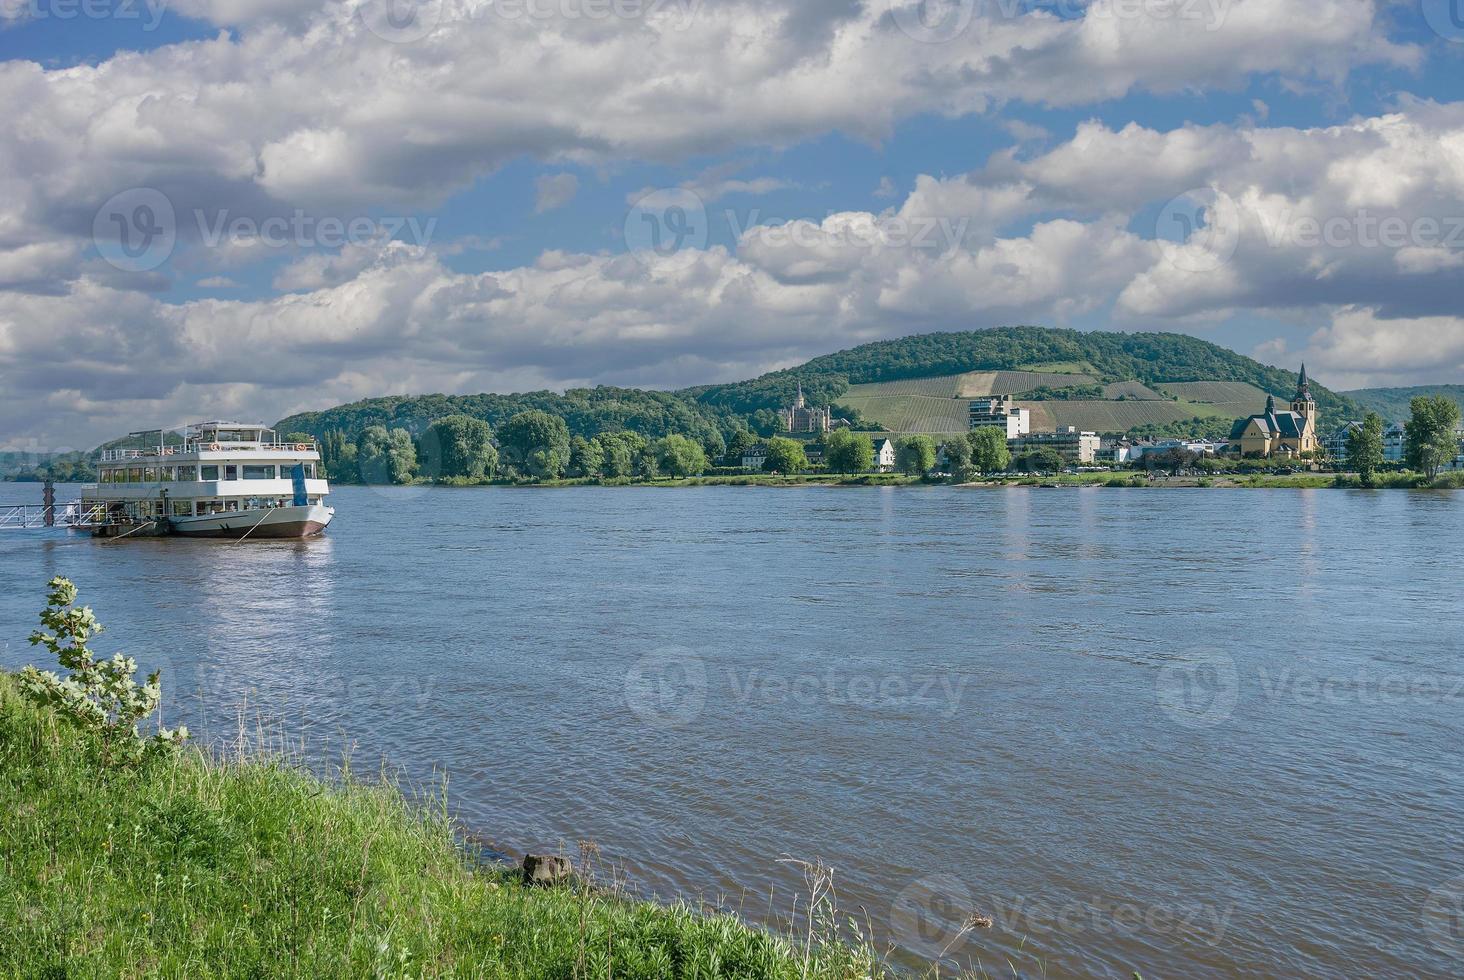 se till hälsa tillflykt av dålig hoenningen på Rhen flod, Tyskland foto